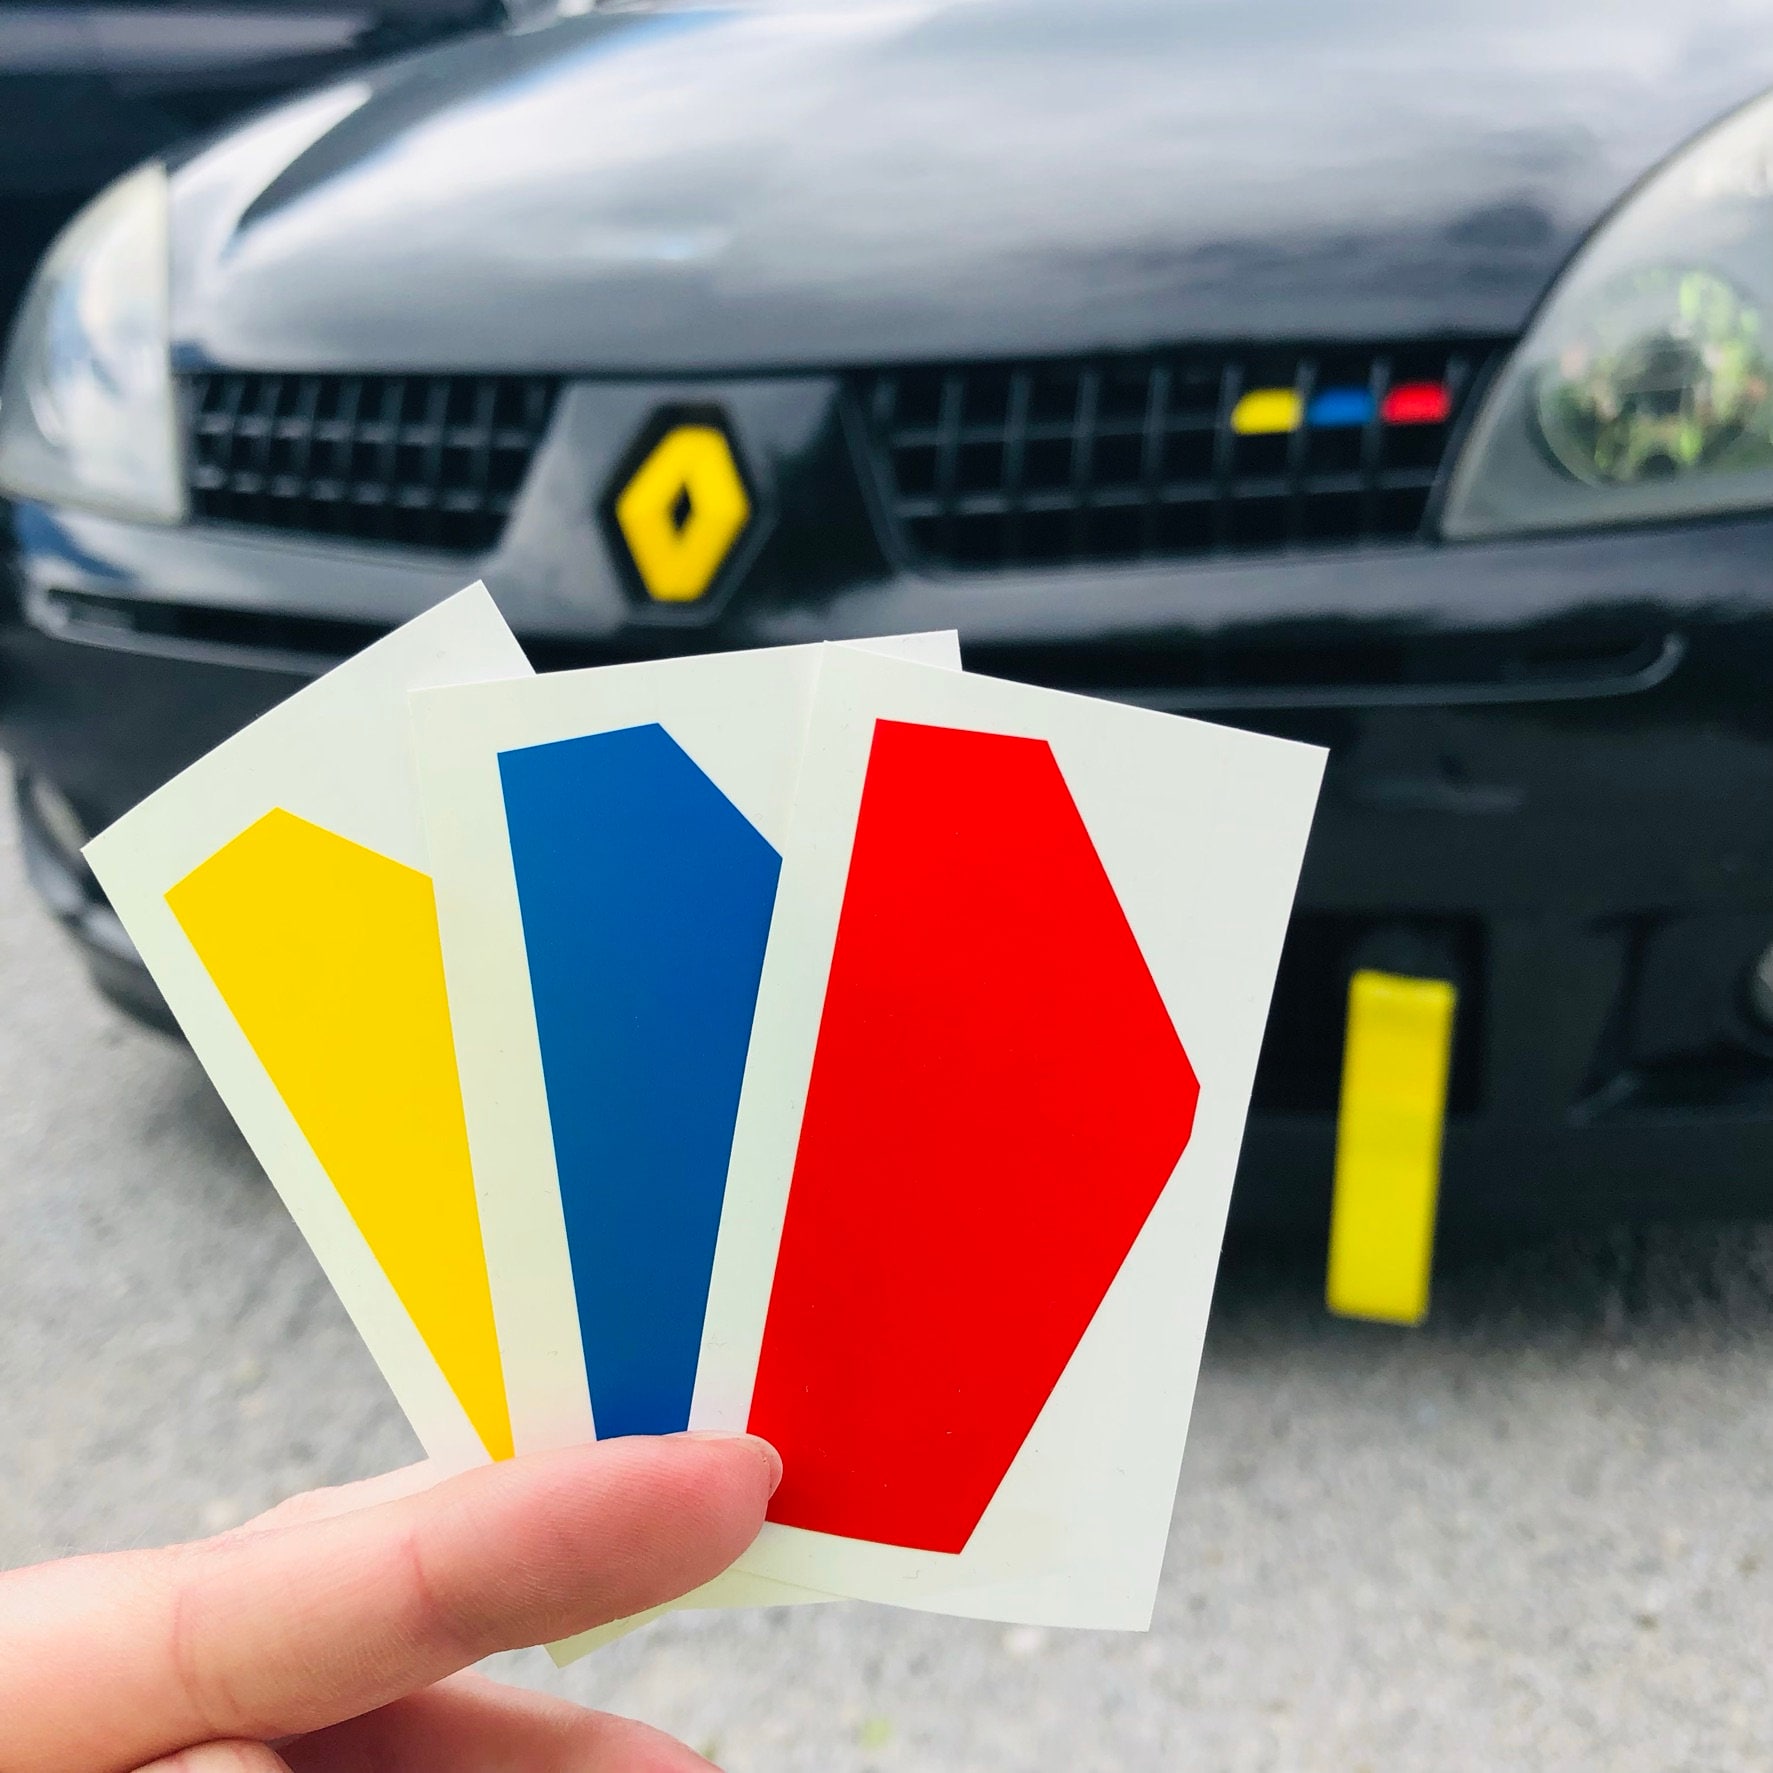 Stickers pour Renault Sport RS Sport - X2 Autocollants carrosserie - vinyl  PRO